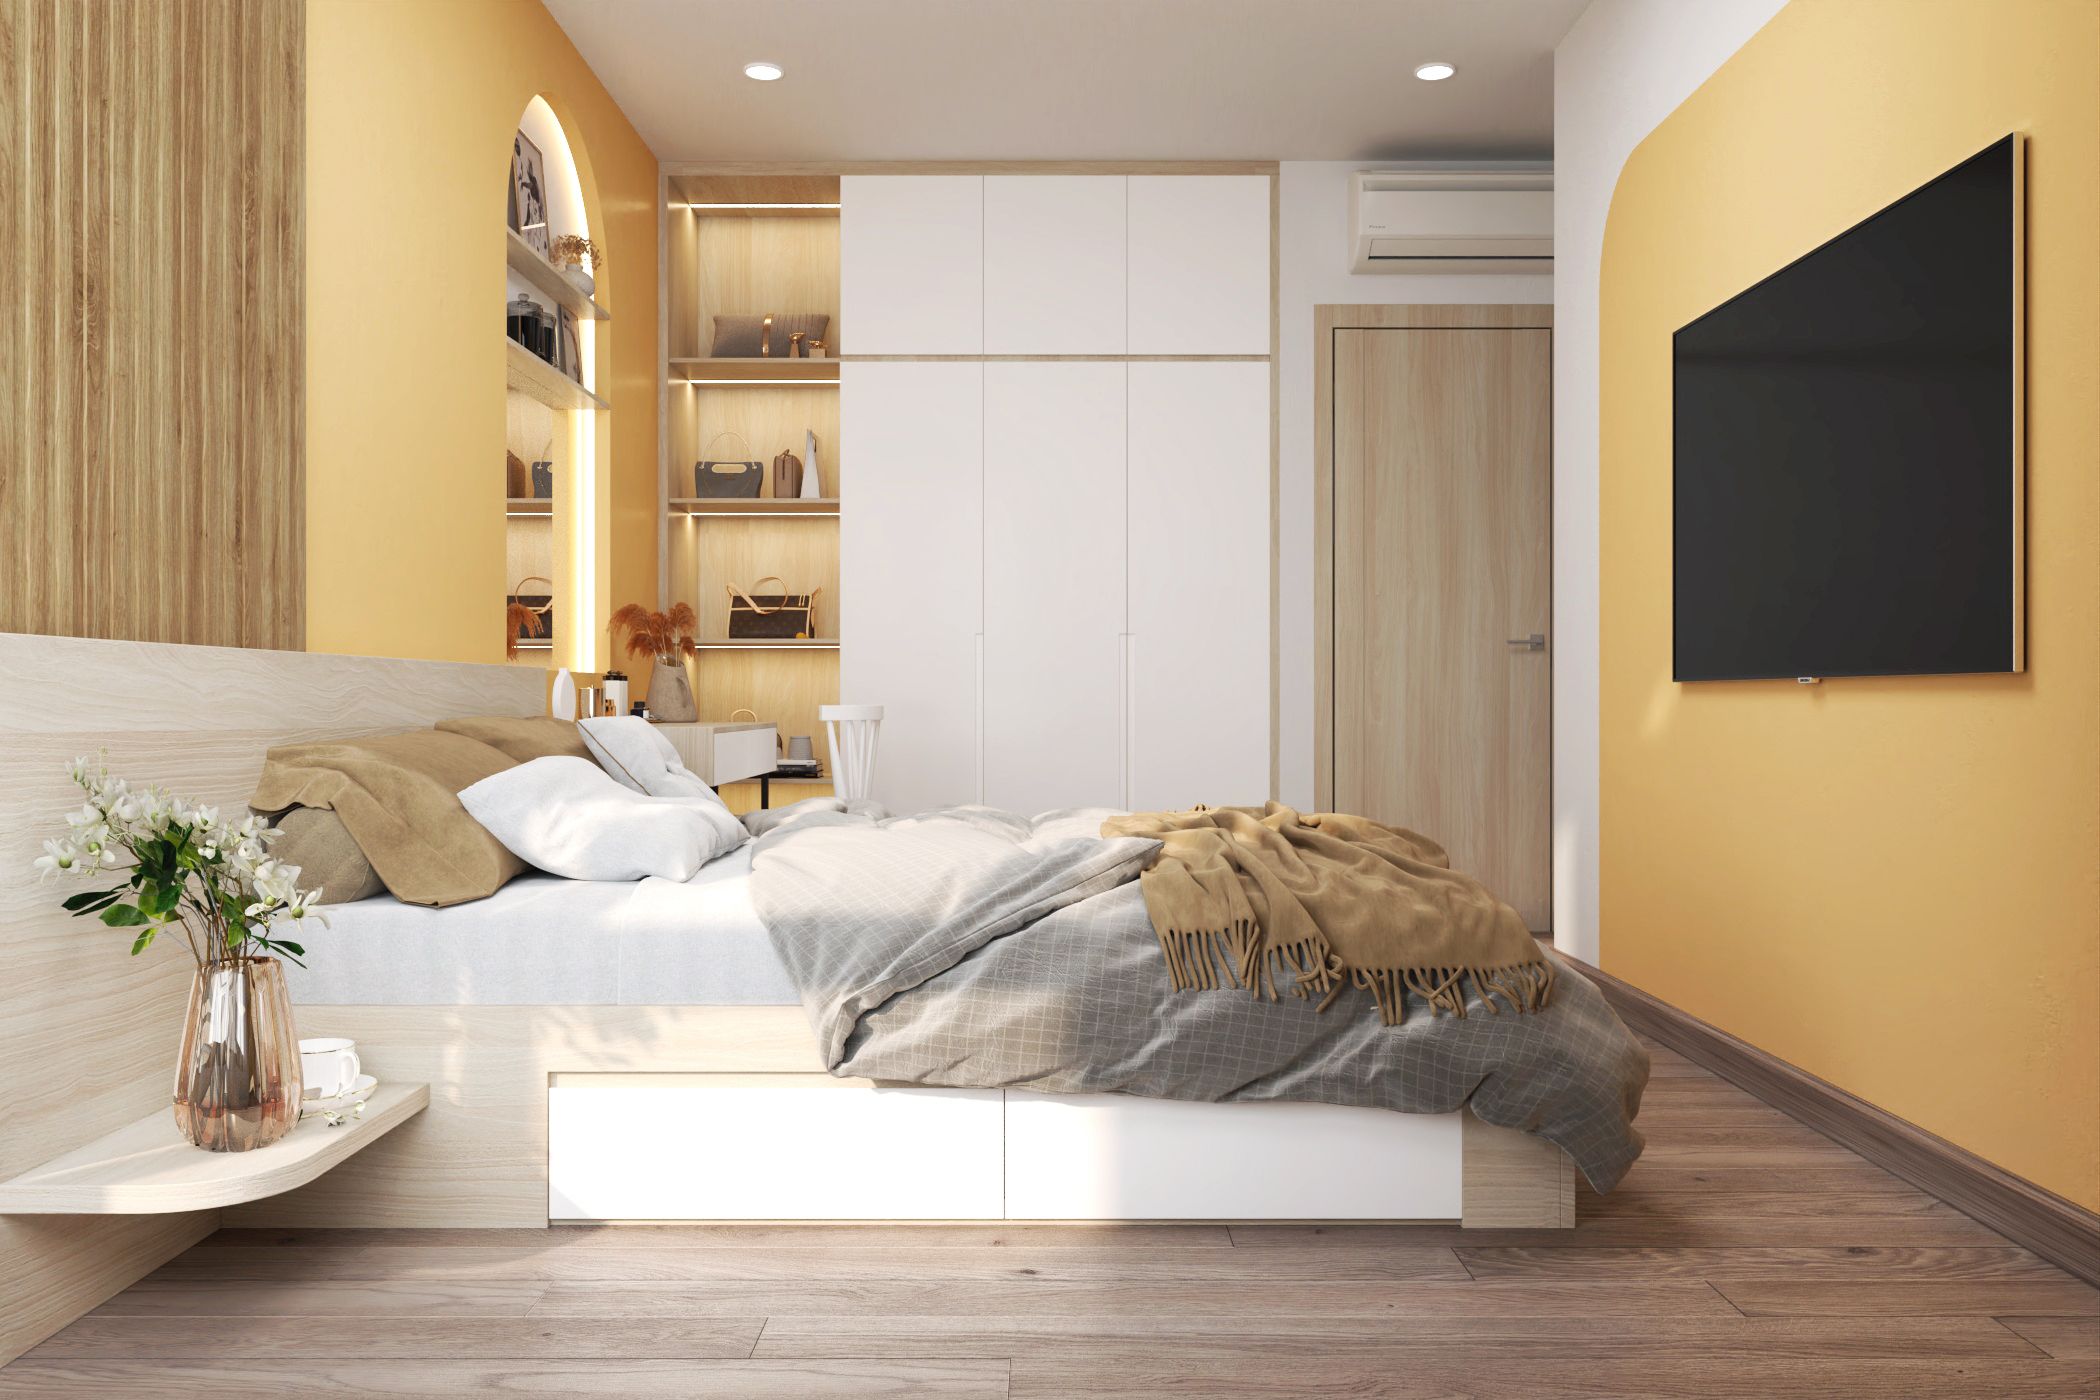 Màu vàng kem mang đến cảm giác dịu dàng, nhẹ nhàng và tinh tế cho không gian phòng ngủ